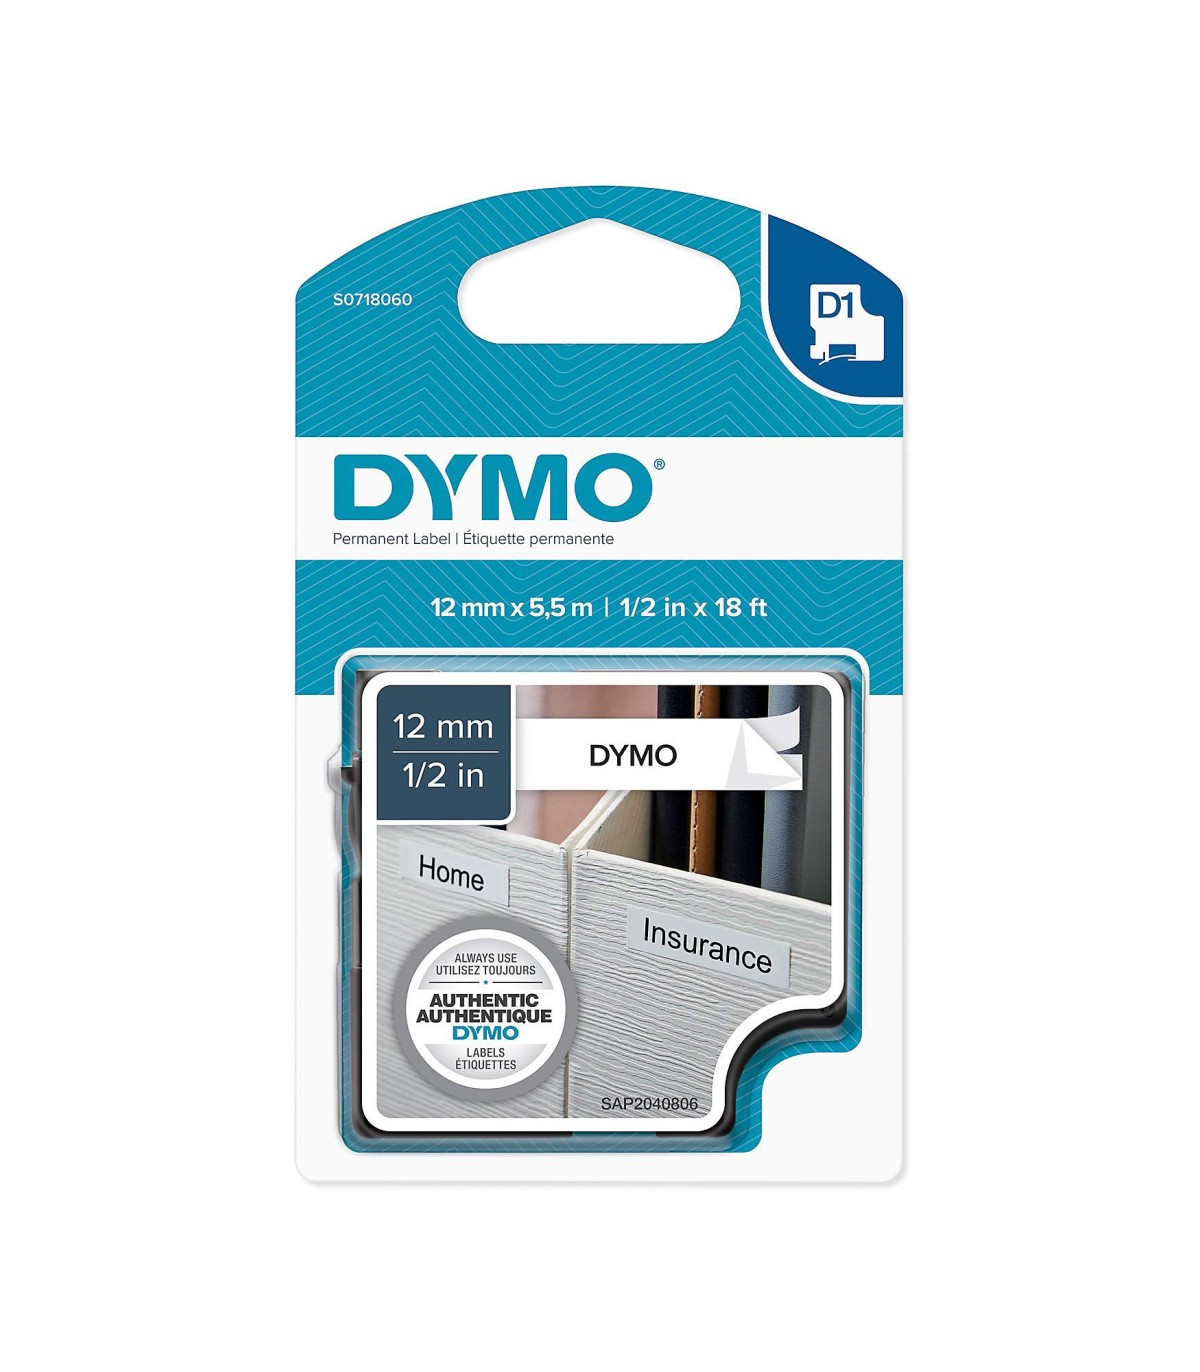 DYMO LabelManager cassette ruban D1 hautes performances, Polyester